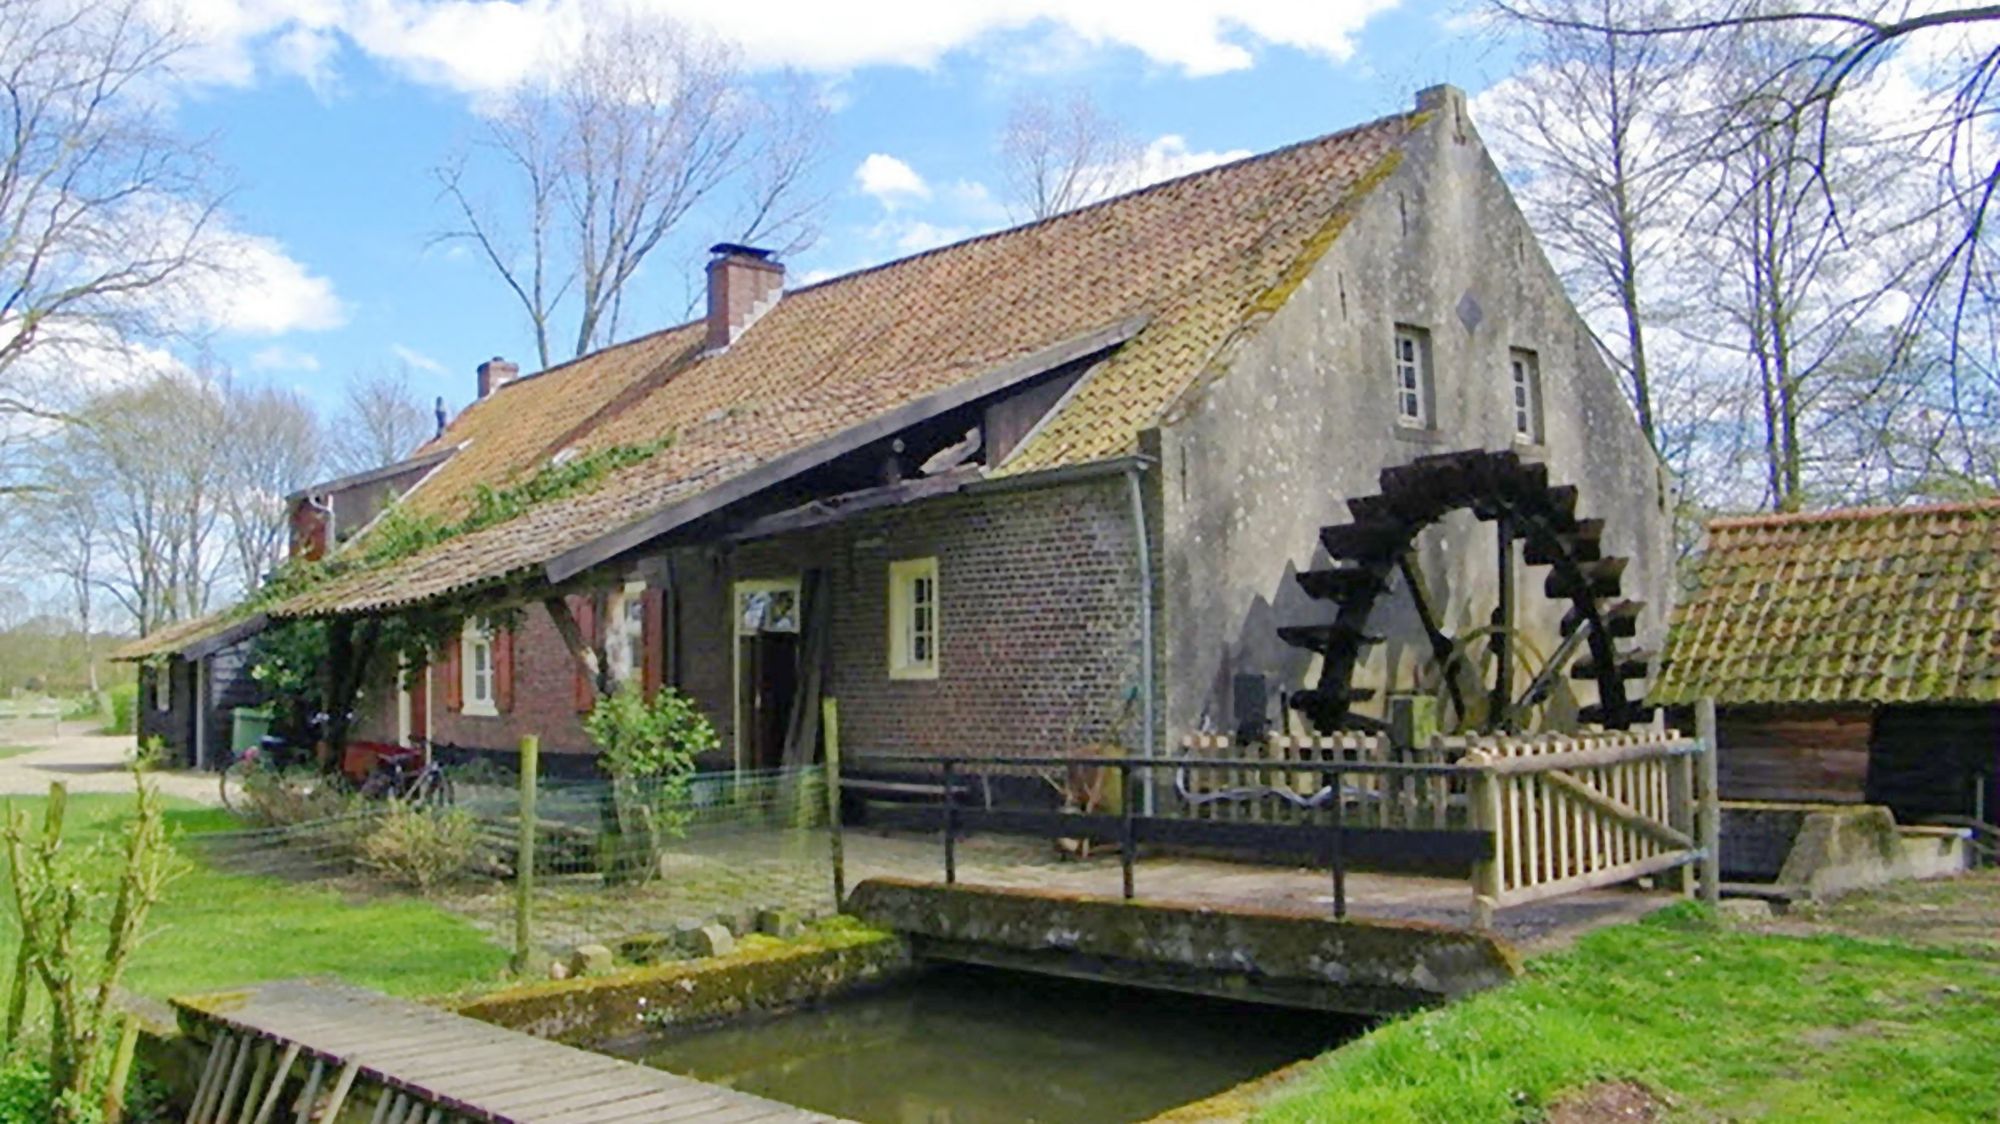 Toeren in Noord-Limburg tussen molens, natuurgebieden en landsgrenzen